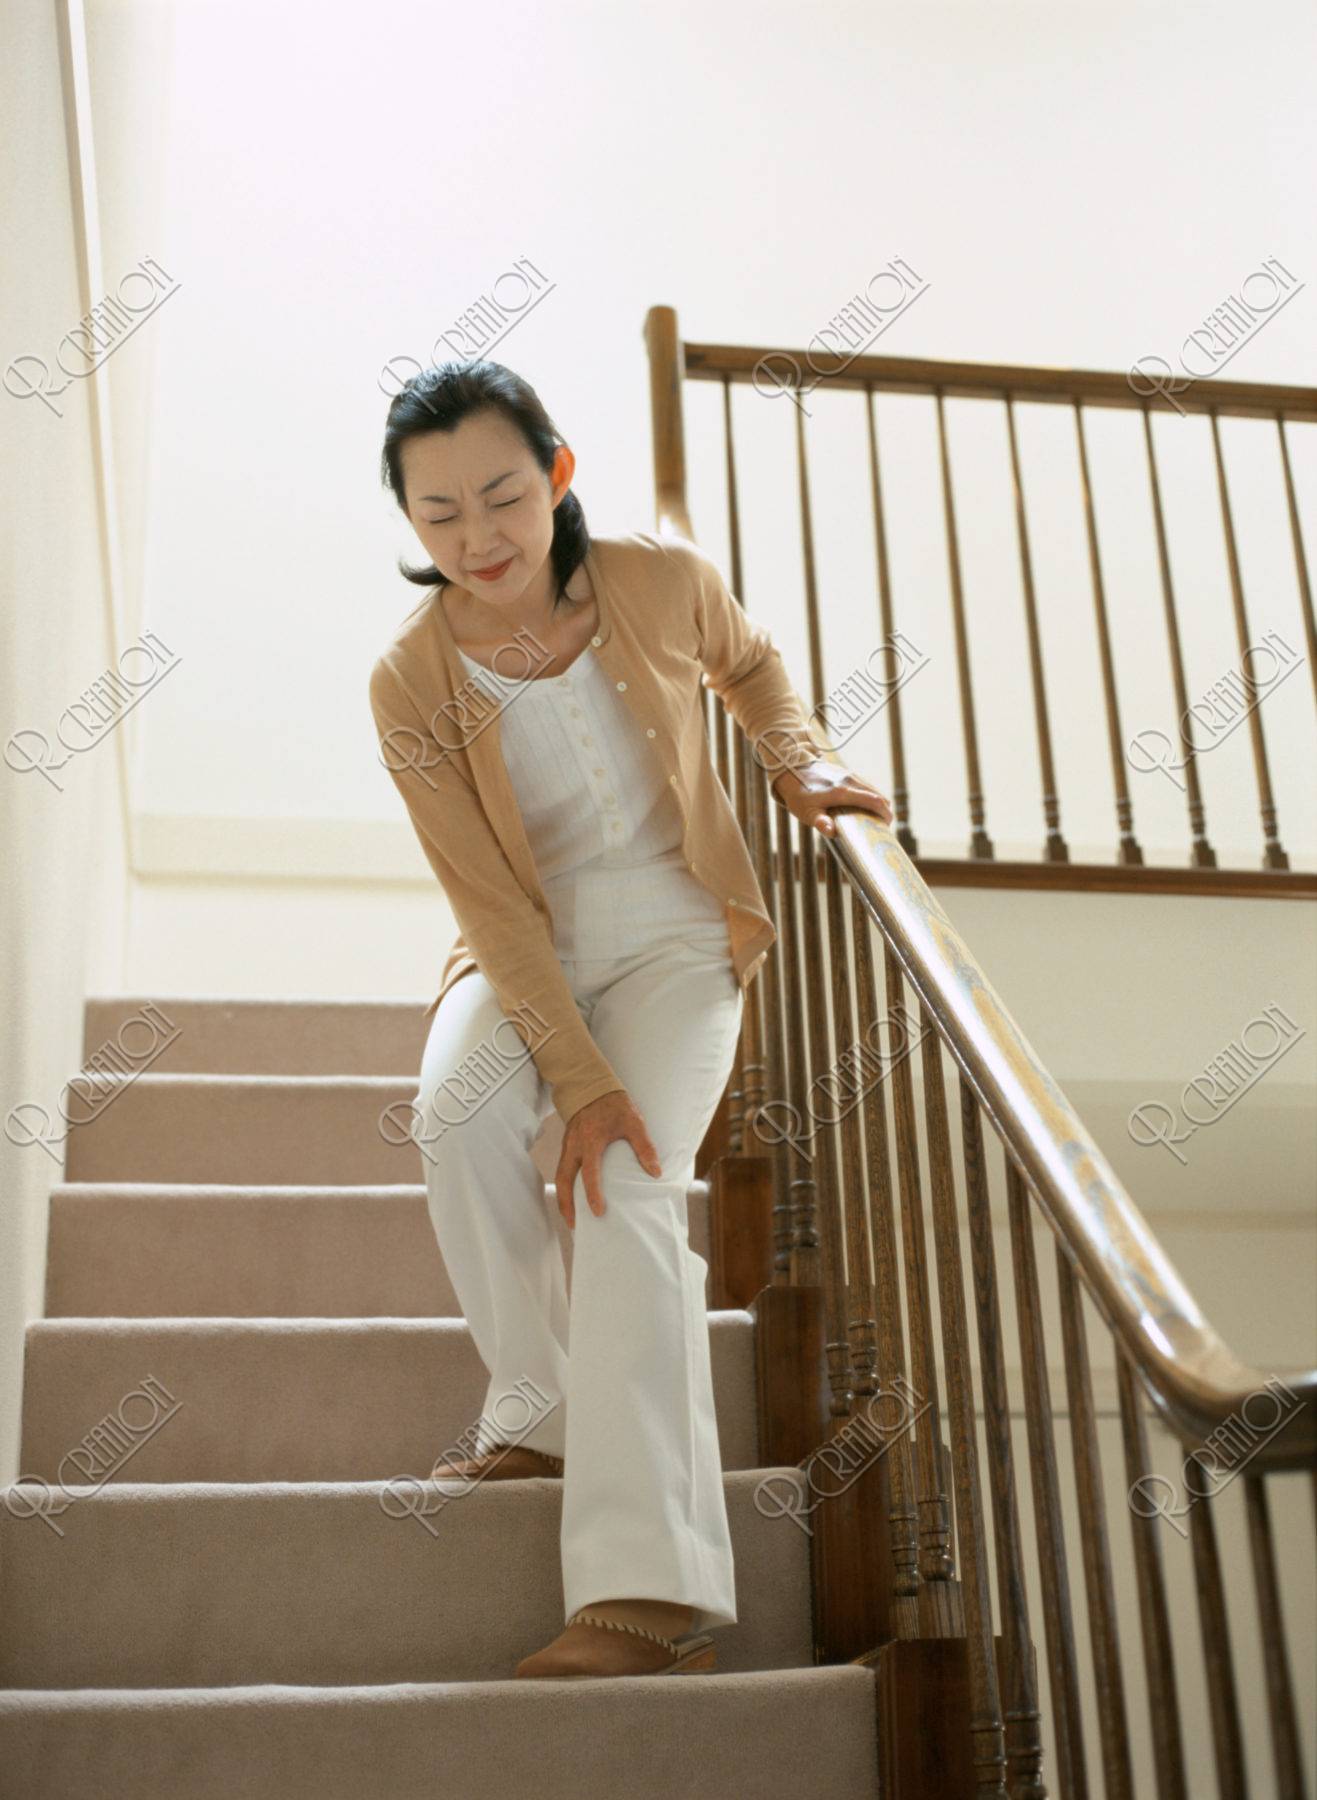 痛みをこらえて階段を降りる女性 ストックフォト アールクリエーション